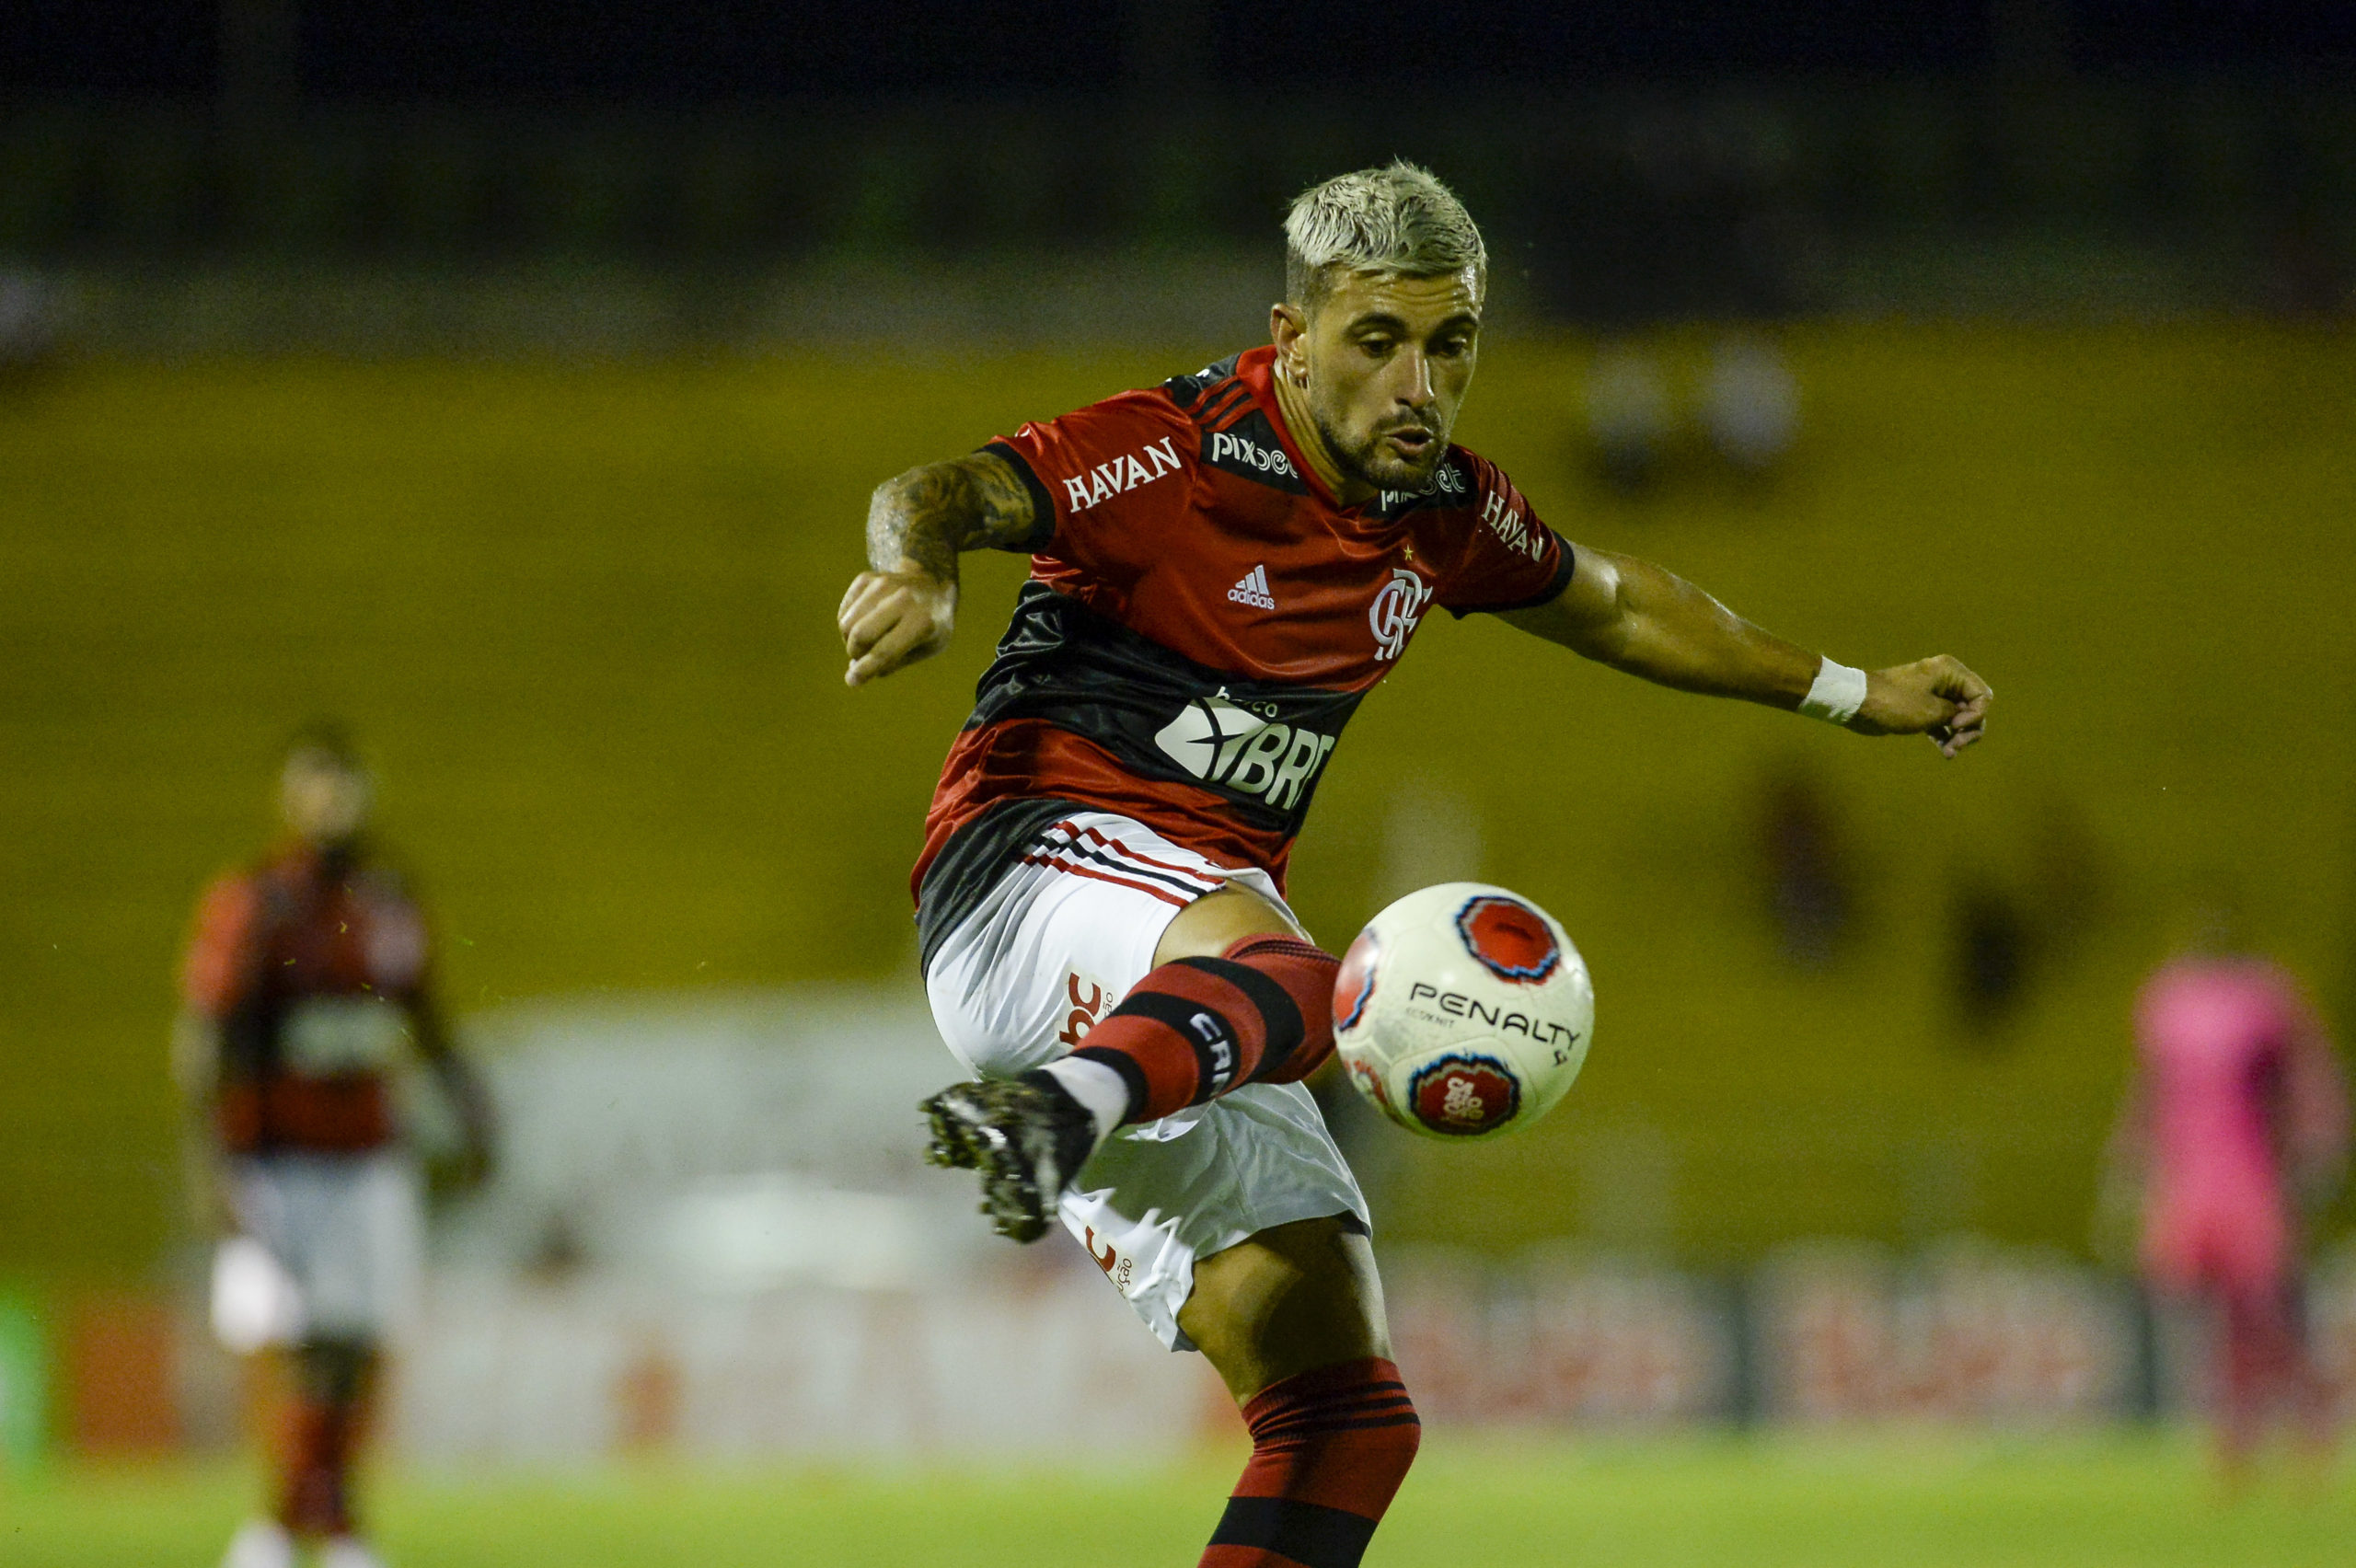 Com exímia cobrança de falta, Arrascaeta chega a 40 gols com a camisa do Flamengo